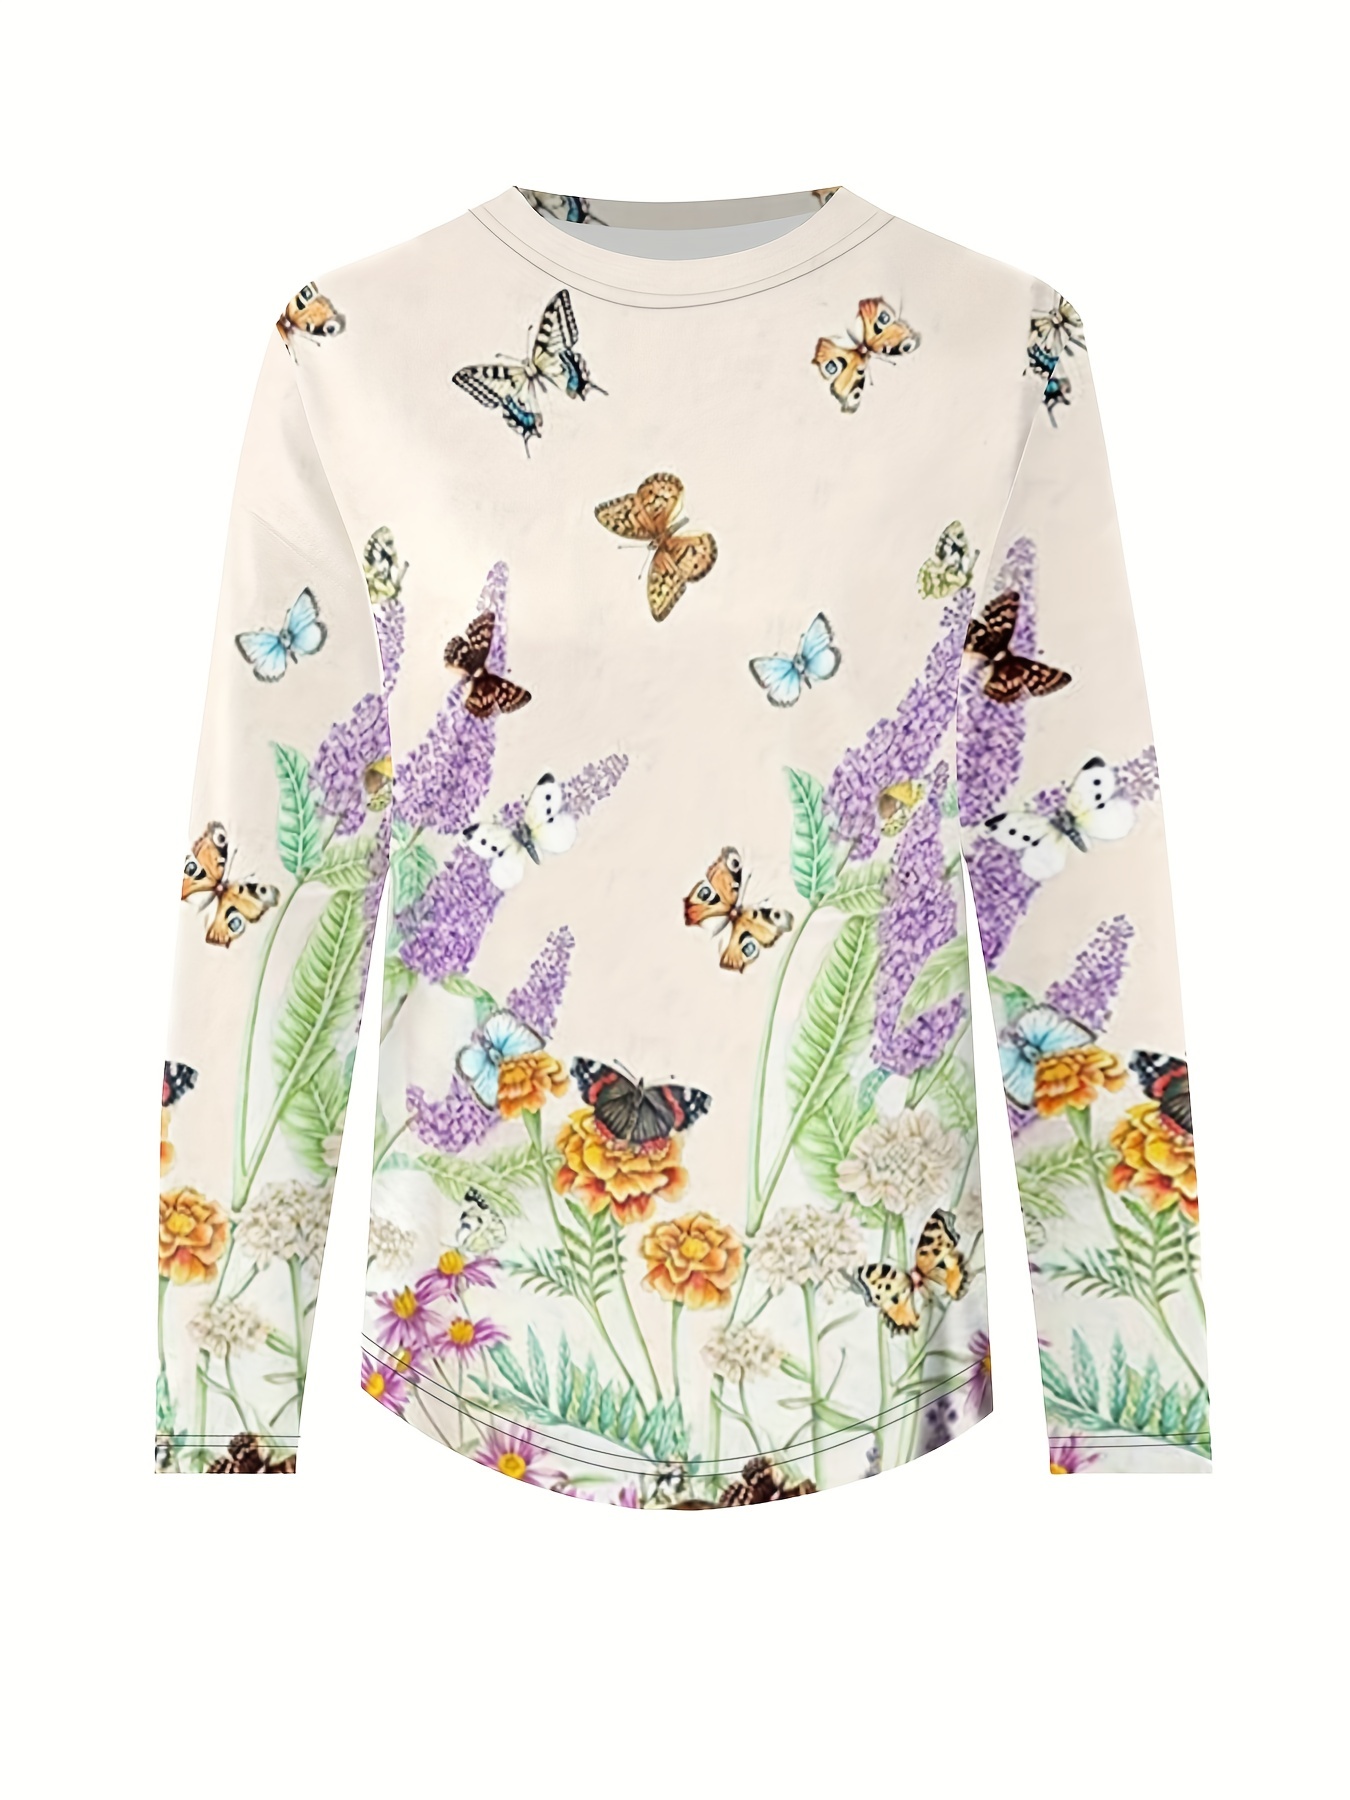 Camiseta manga larga estampado mariposa